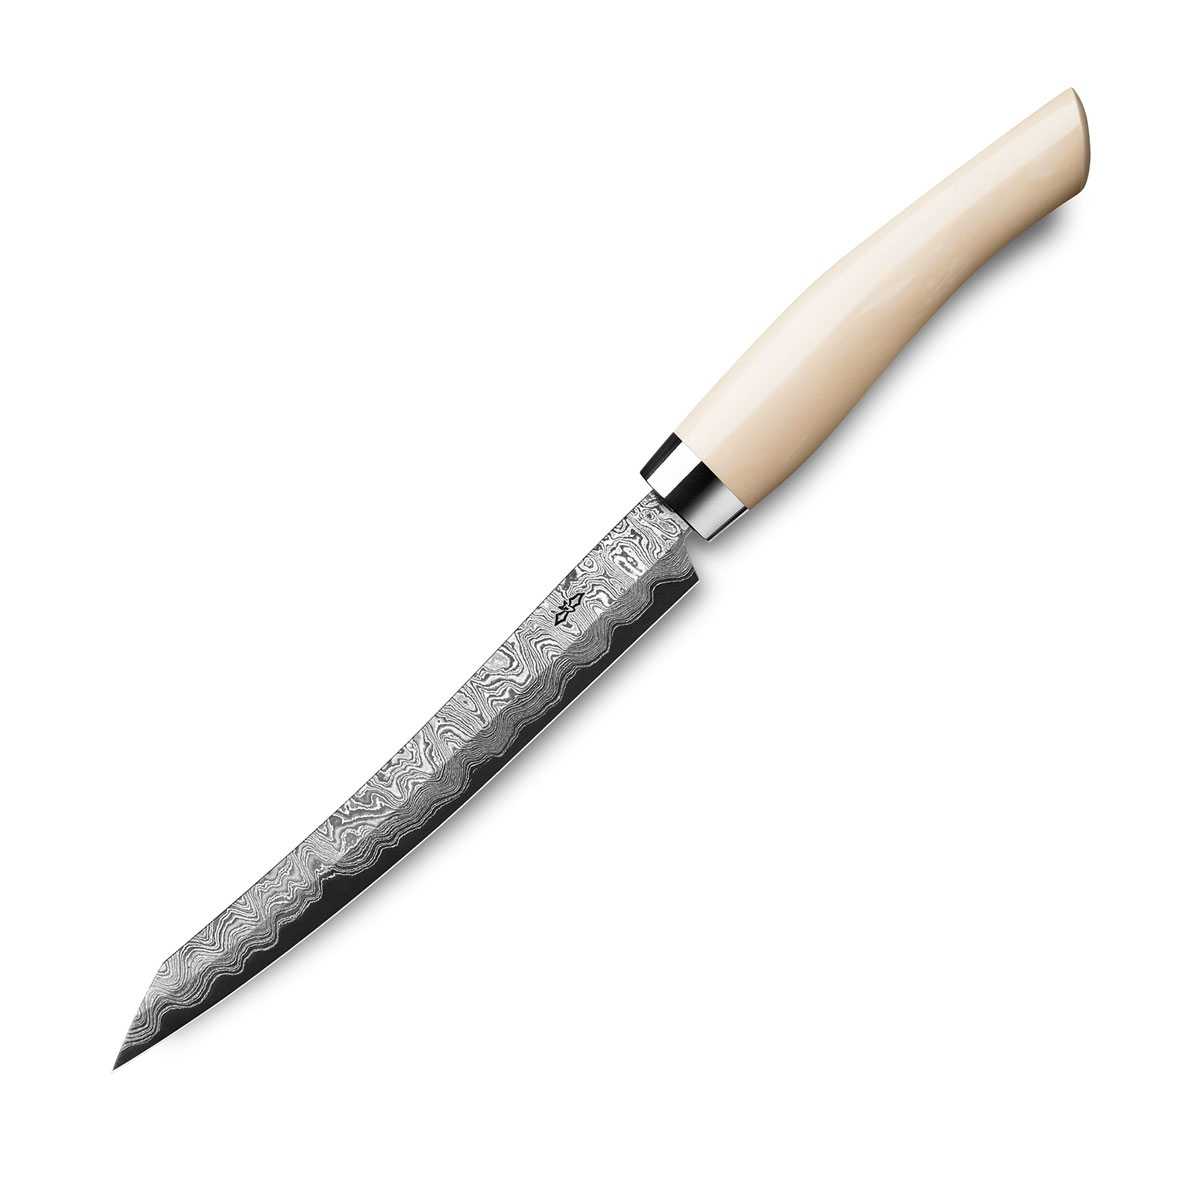 Nesmuk Exklusiv C150 Damast Slicer 16 cm mit Schneidlage / Griff aus Juma Ivory